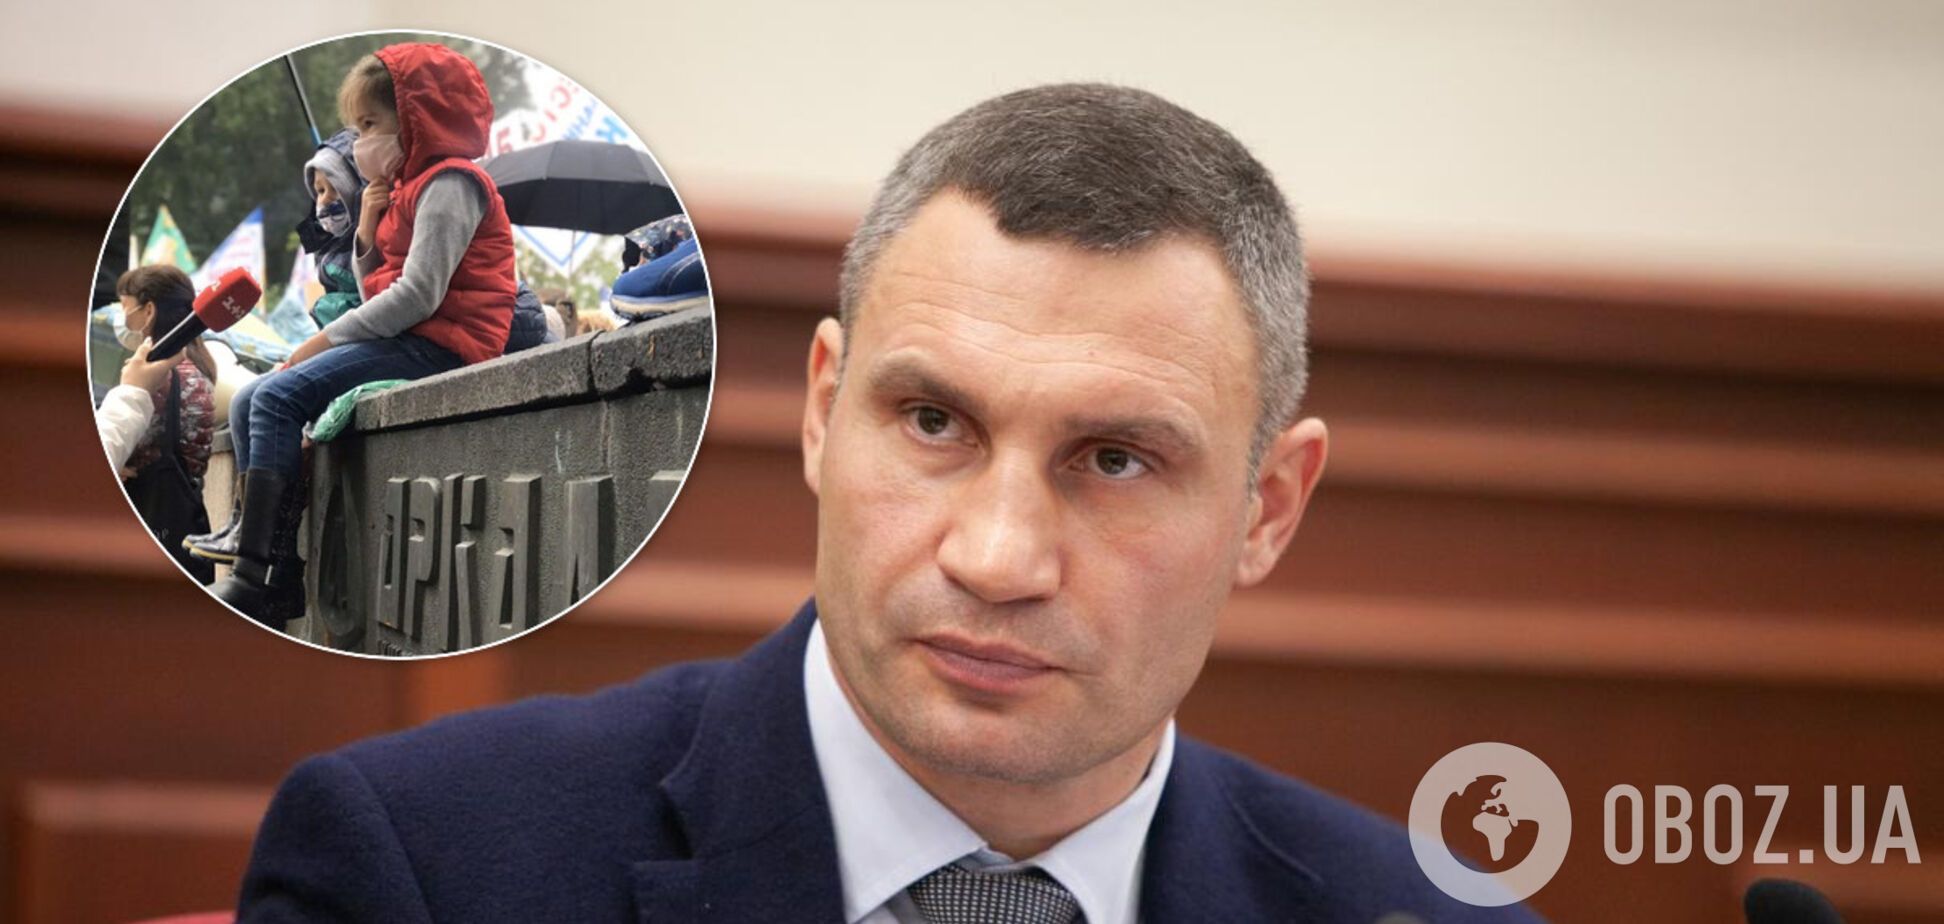 Кличко призвал правоохранителей взяться за скандального застройщика 'Аркада'. Иллюстрация